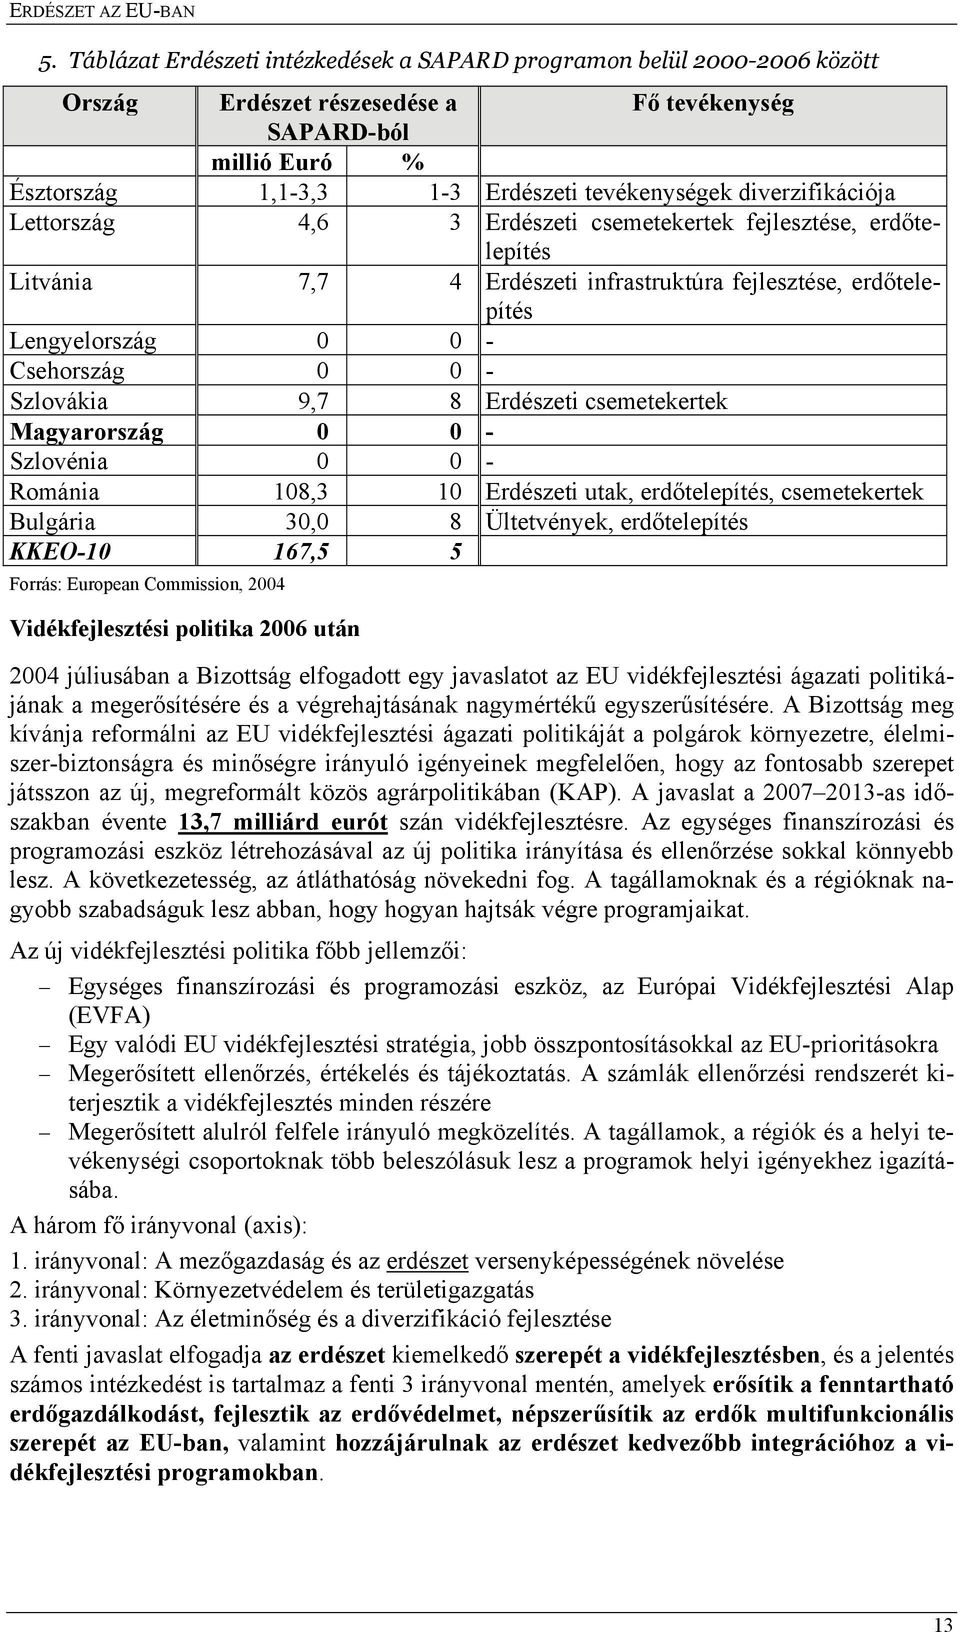 diverzifikációja Lettország 4,6 3 Erdészeti csemetekertek fejlesztése, erdőtelepítés Litvánia 7,7 4 Erdészeti infrastruktúra fejlesztése, erdőtelepítés Lengyelország 0 0 - Csehország 0 0 - Szlovákia